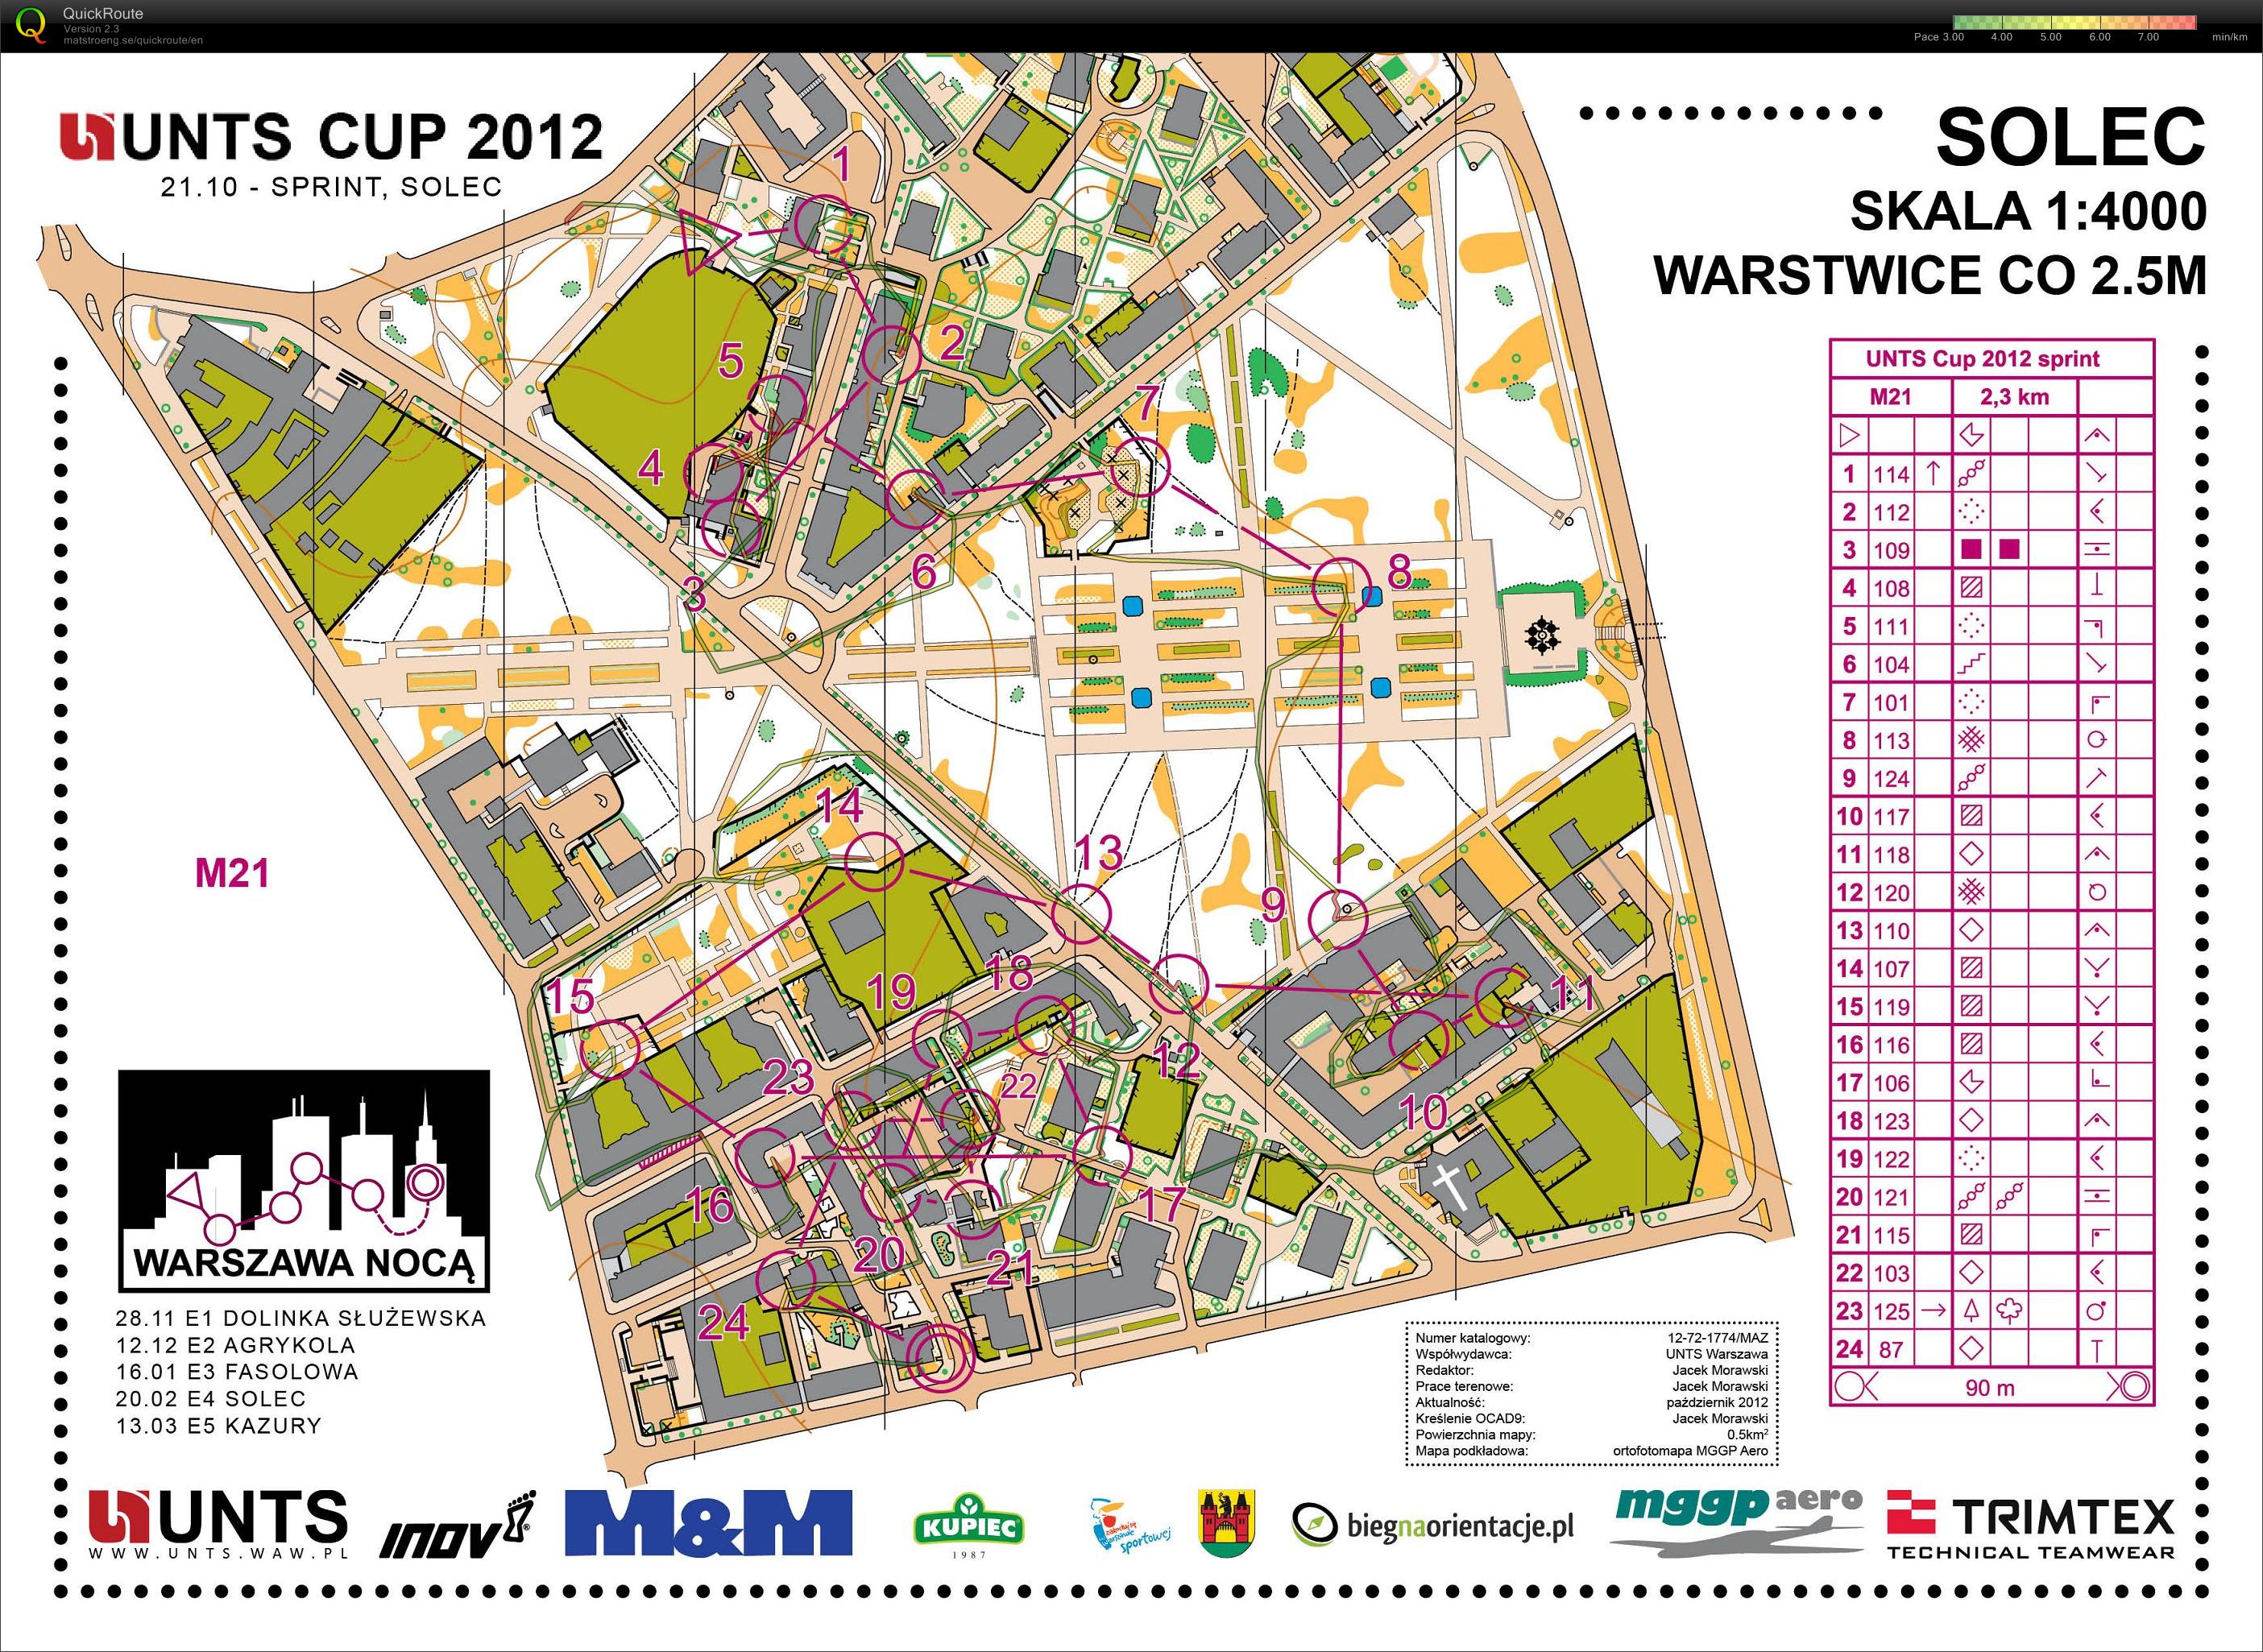 Z157 - Mistrzostwa Warszawy - sprint (21-10-2012)